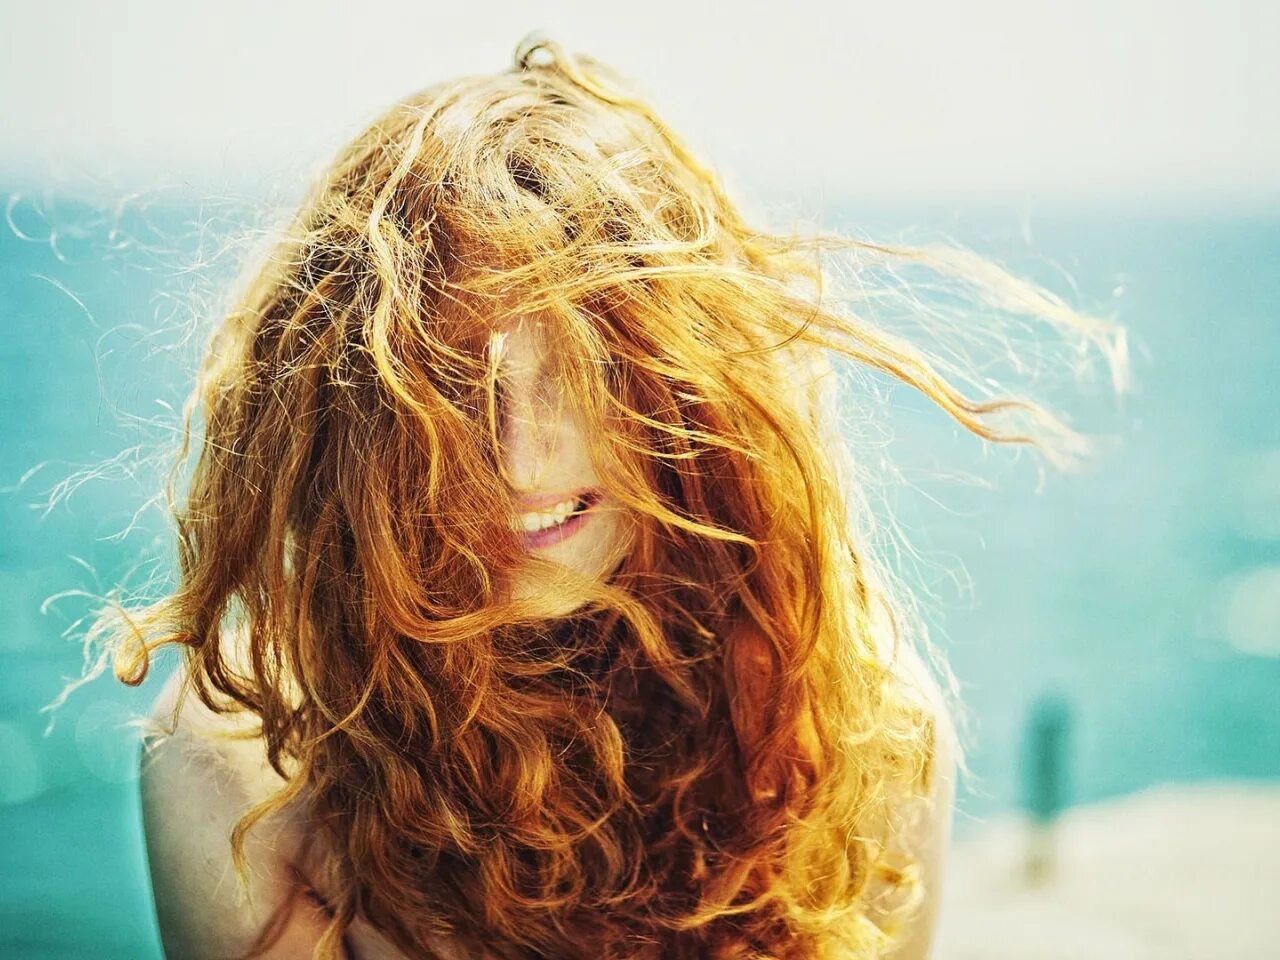 Рыжие кудрявые волосы. Развивающиеся волосы. Растрепанные волосы. Девушка с развевающимися волосами. Будь всегда счастливым и смейся